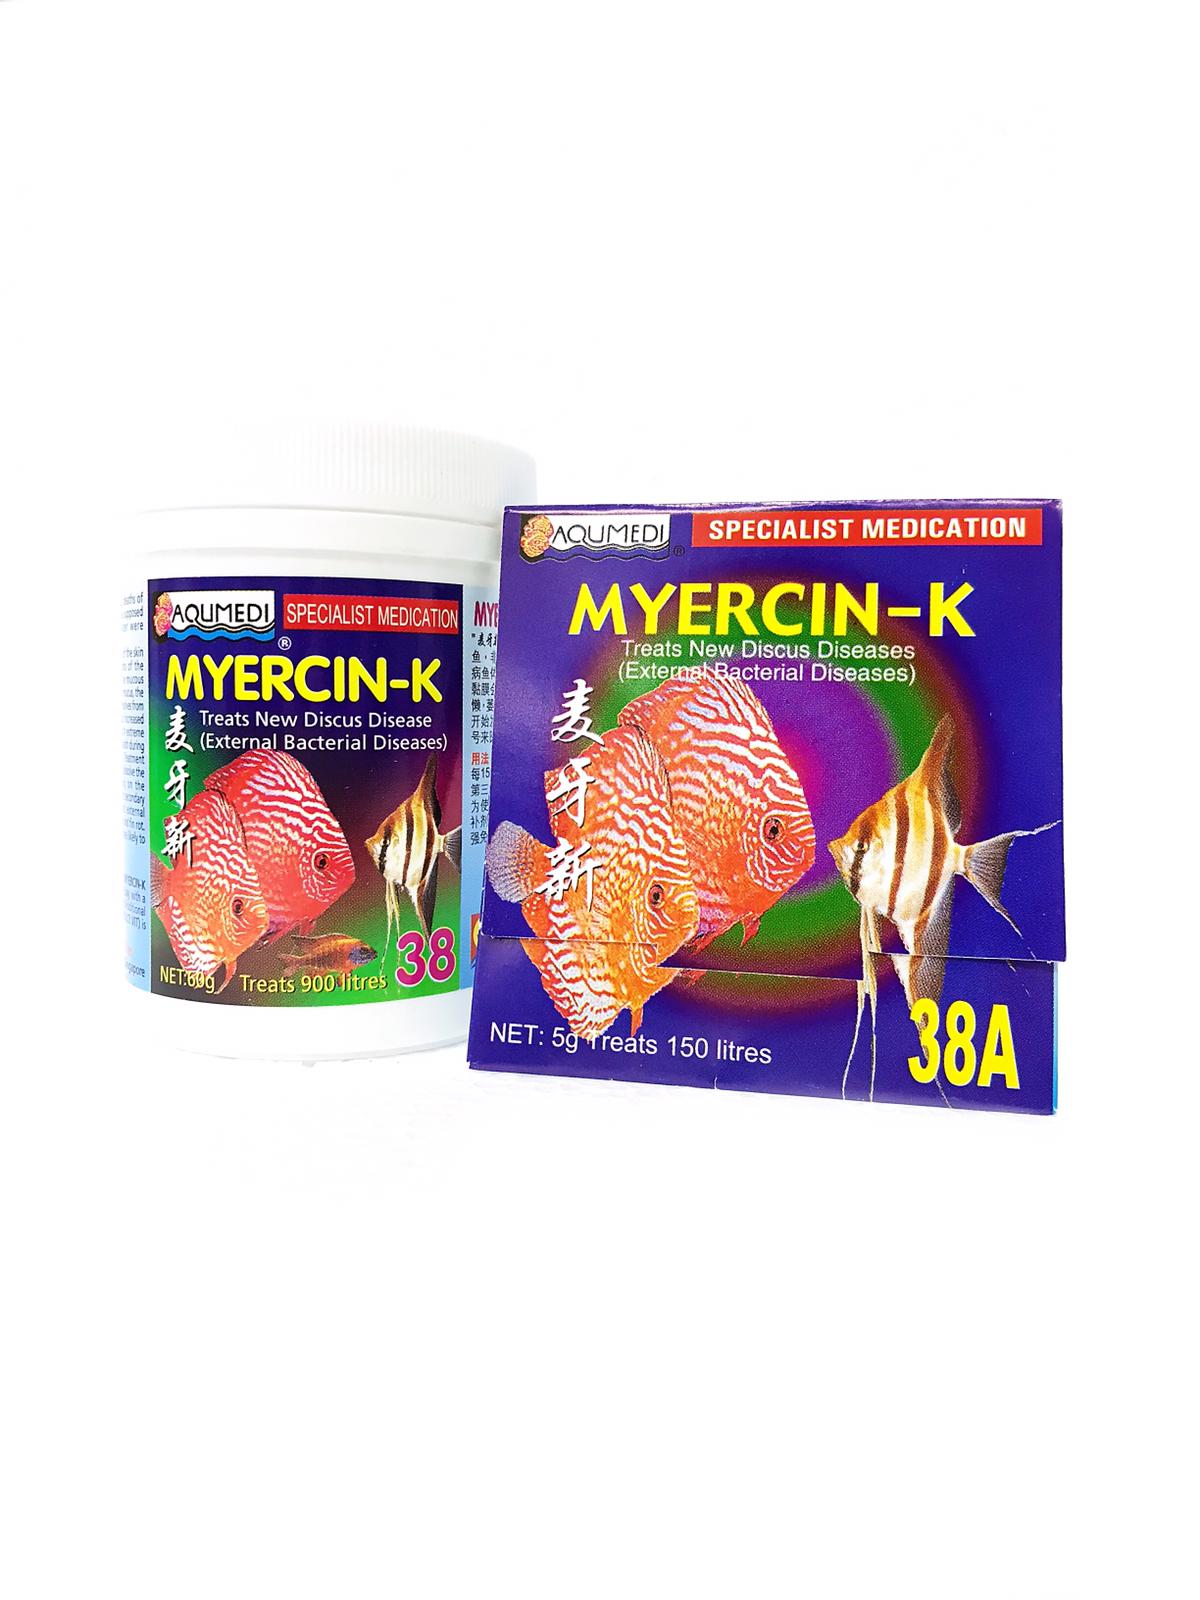 Aqumedi Specialist Medication Myercin-K 38 60g